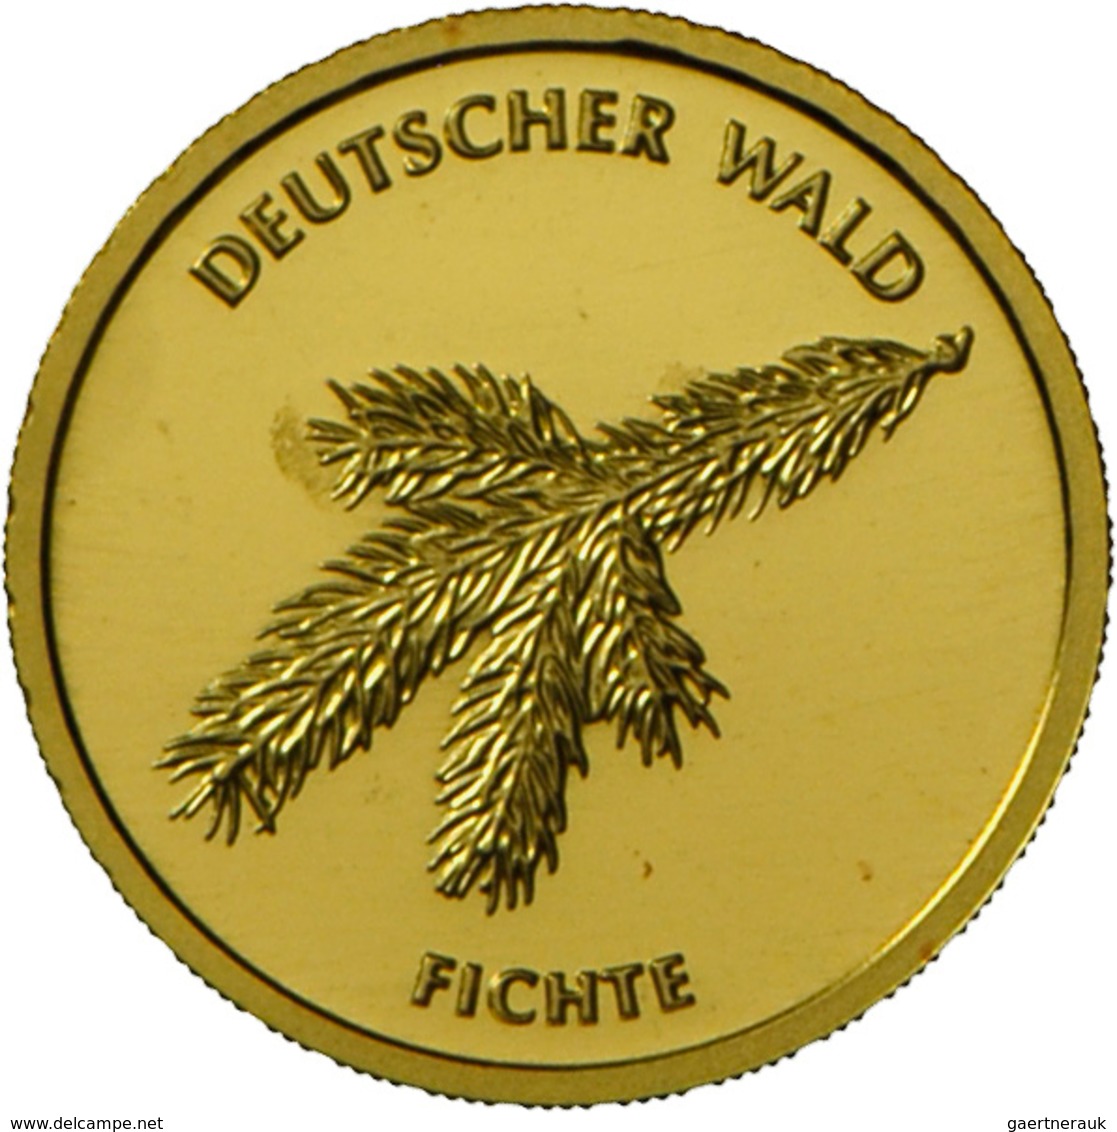 Deutschland - Anlagegold: 2 X 20 Euro 2012 Fichte (F,G), Jaeger 572. Jede Münze Wiegt 3,89 G 999/100 - Allemagne